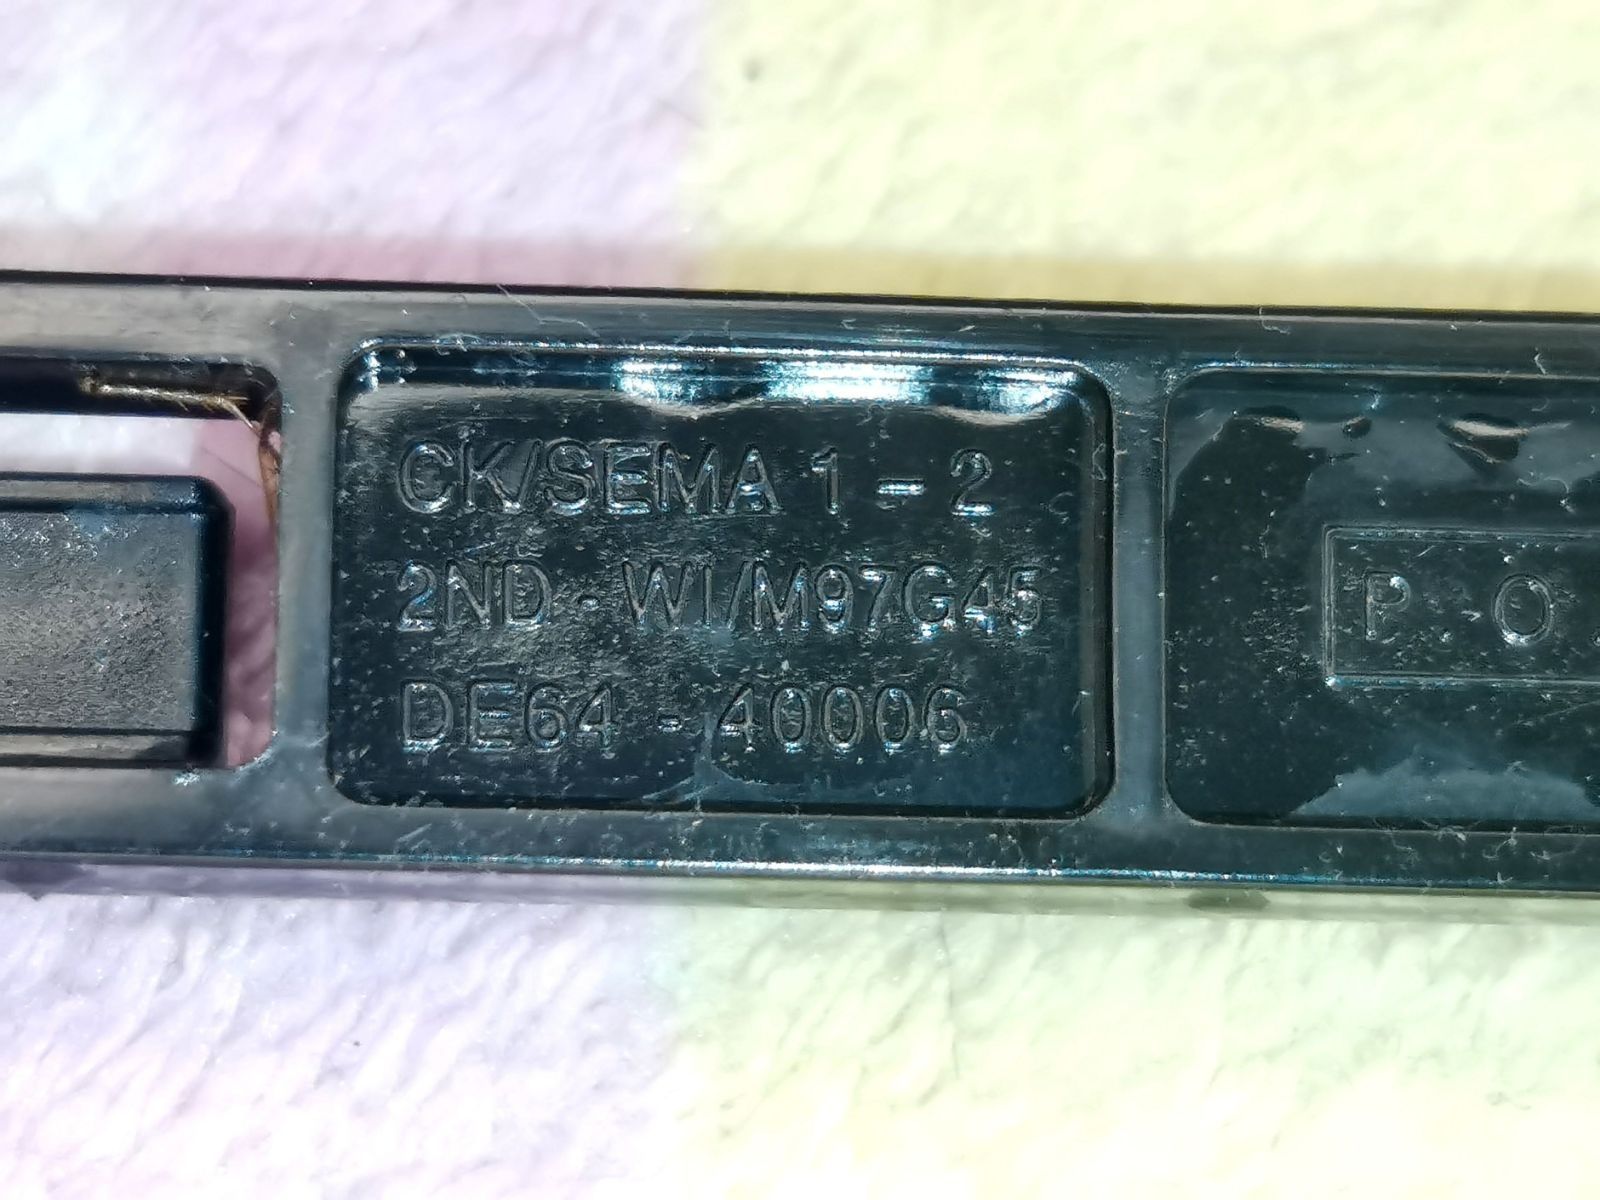 Крючок дверки для микроволновки Samsung DE64-40006A, CE245G, CE2618N